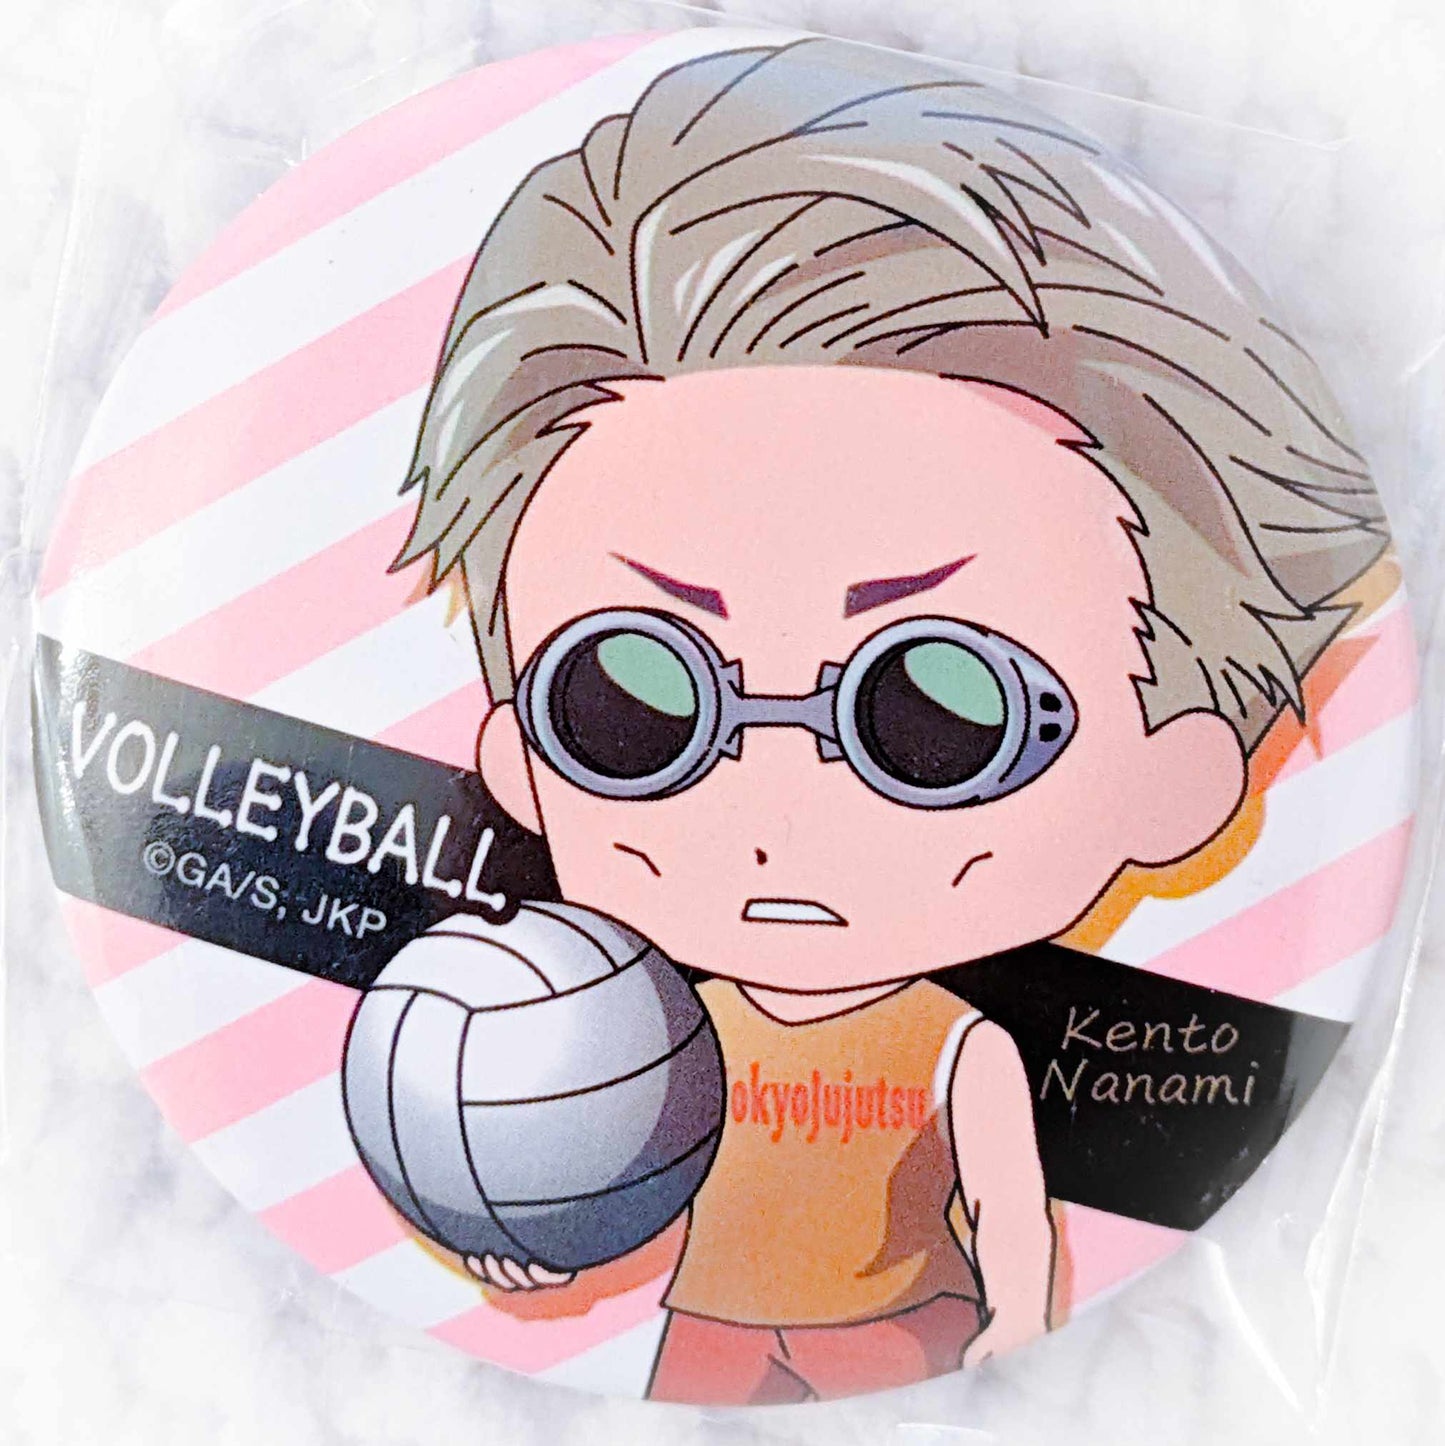 Kento Nanami - Jujutsu Kaisen Anime Bukatsu Series Volleyball Pin Badge Button